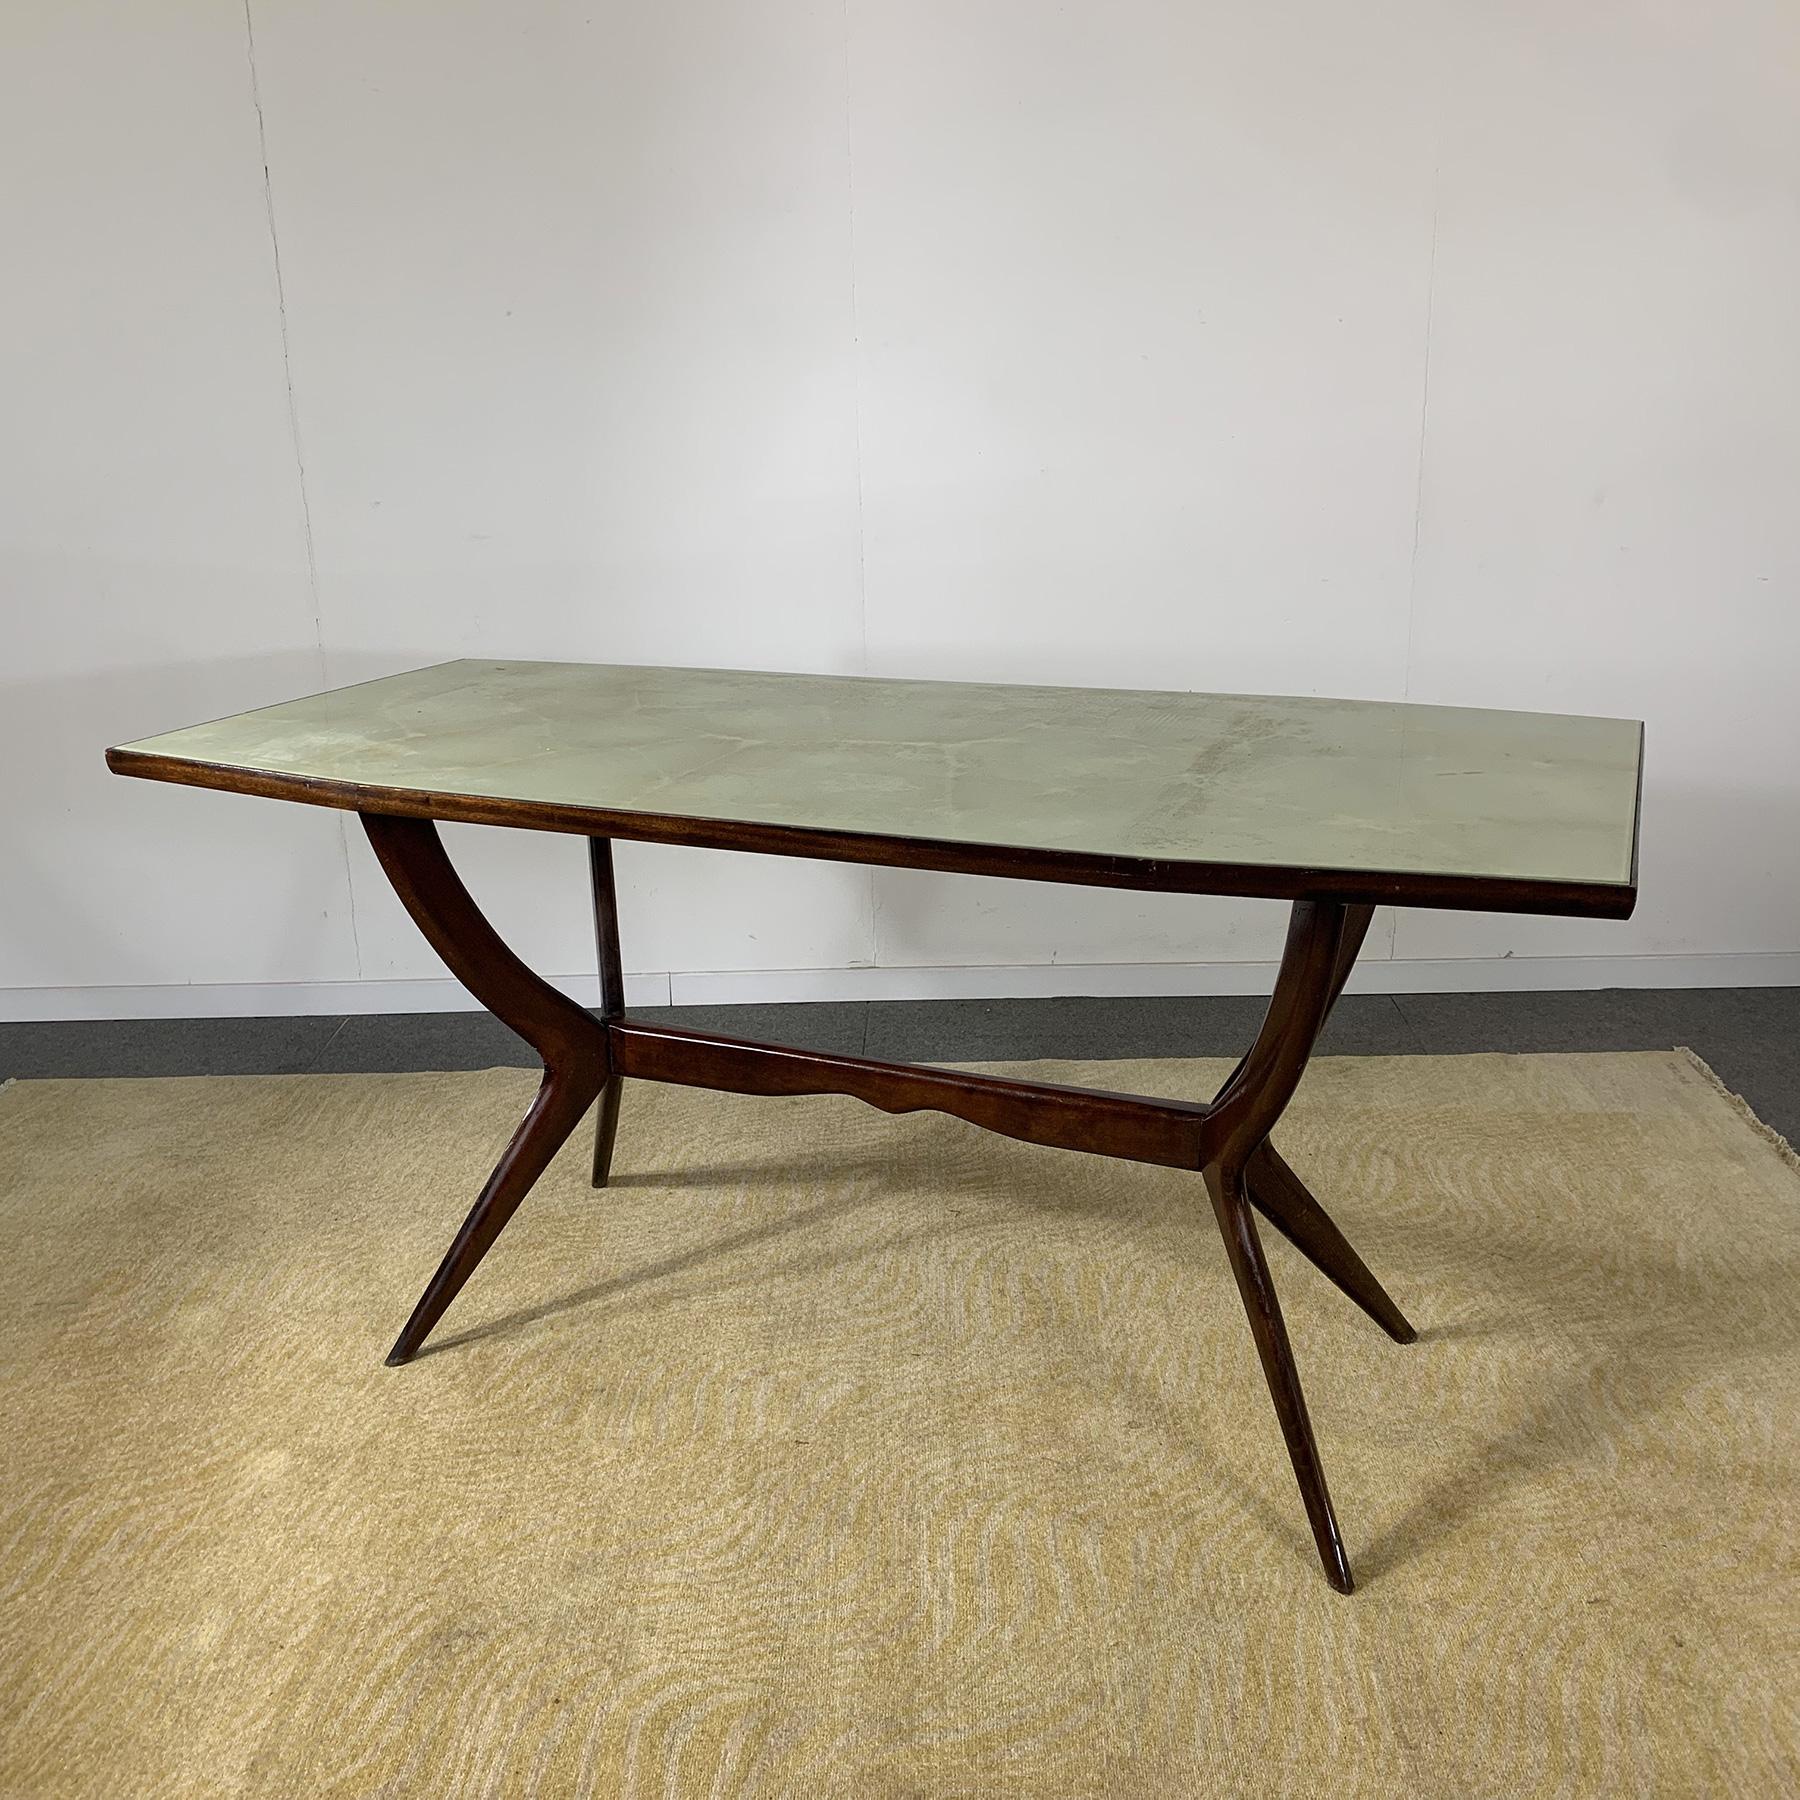 Table de salle à manger avec structure en bois et plateau en verre rétro coloré dans le style de la production des années 1950 d'Ico Parisi.